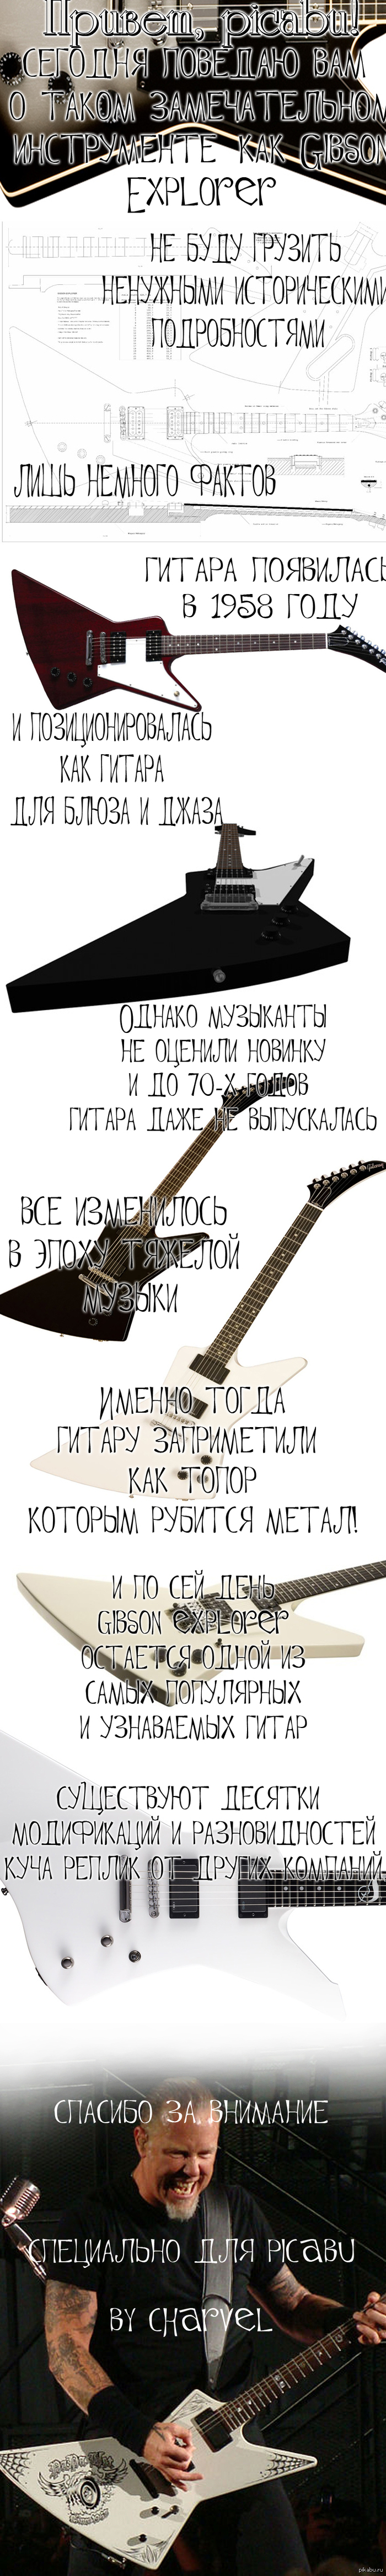   .( #1 - Gibson Explorer)  ,       ,        .  ,      .